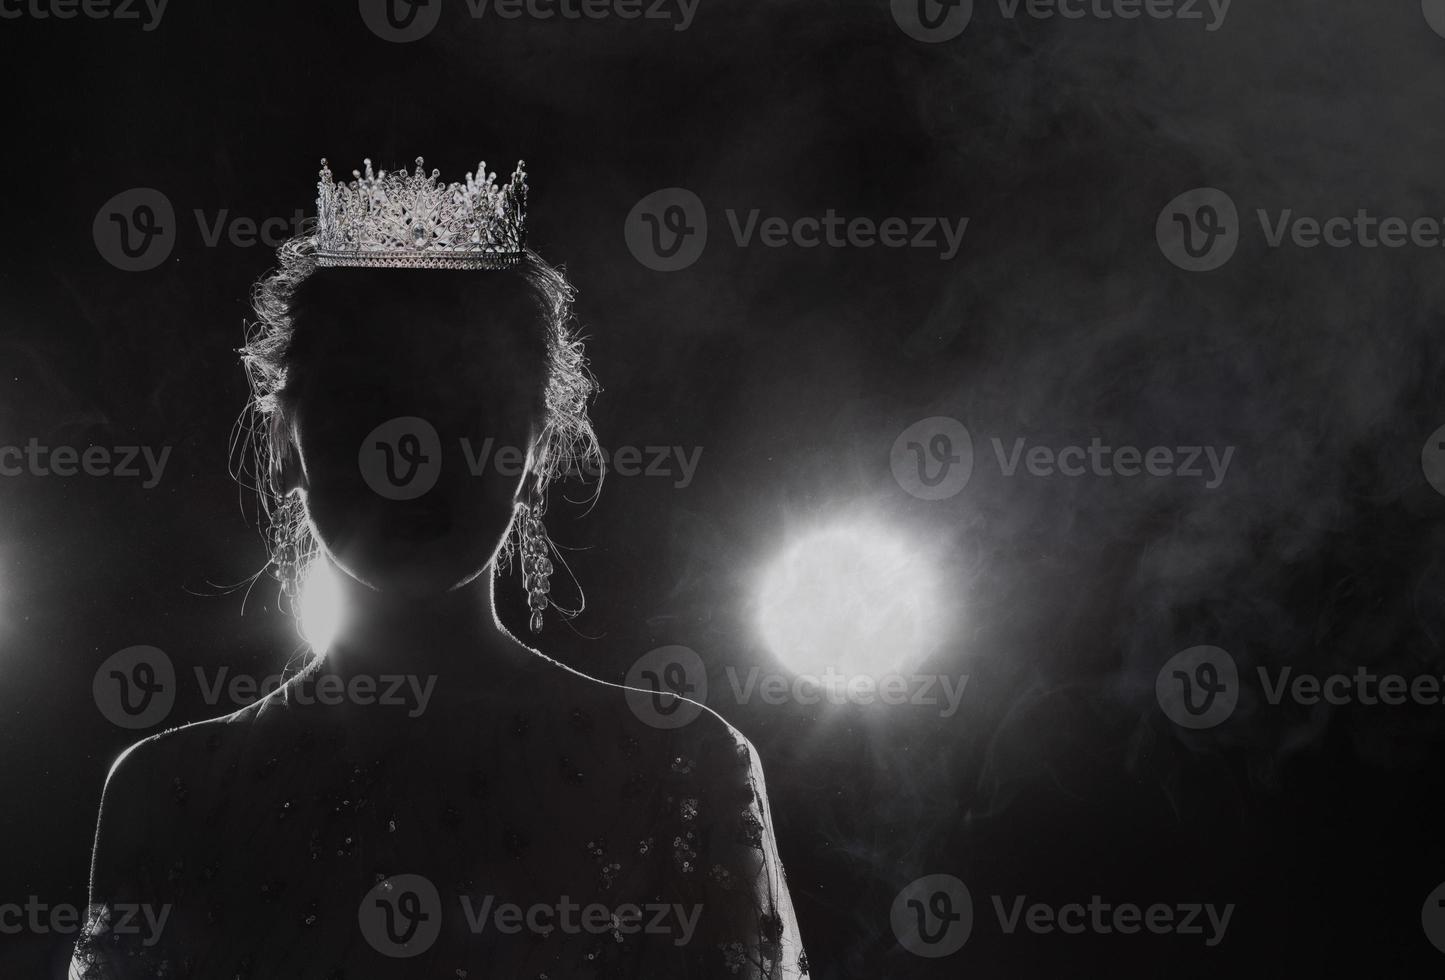 corona de plata de diamante en la cabeza del concurso de belleza miss pageant, joyería de tiara de cristal decorada con gemas y fondo oscuro abstracto sobre niebla de humo de tela negra, espacio de copia de fotografía macro foto